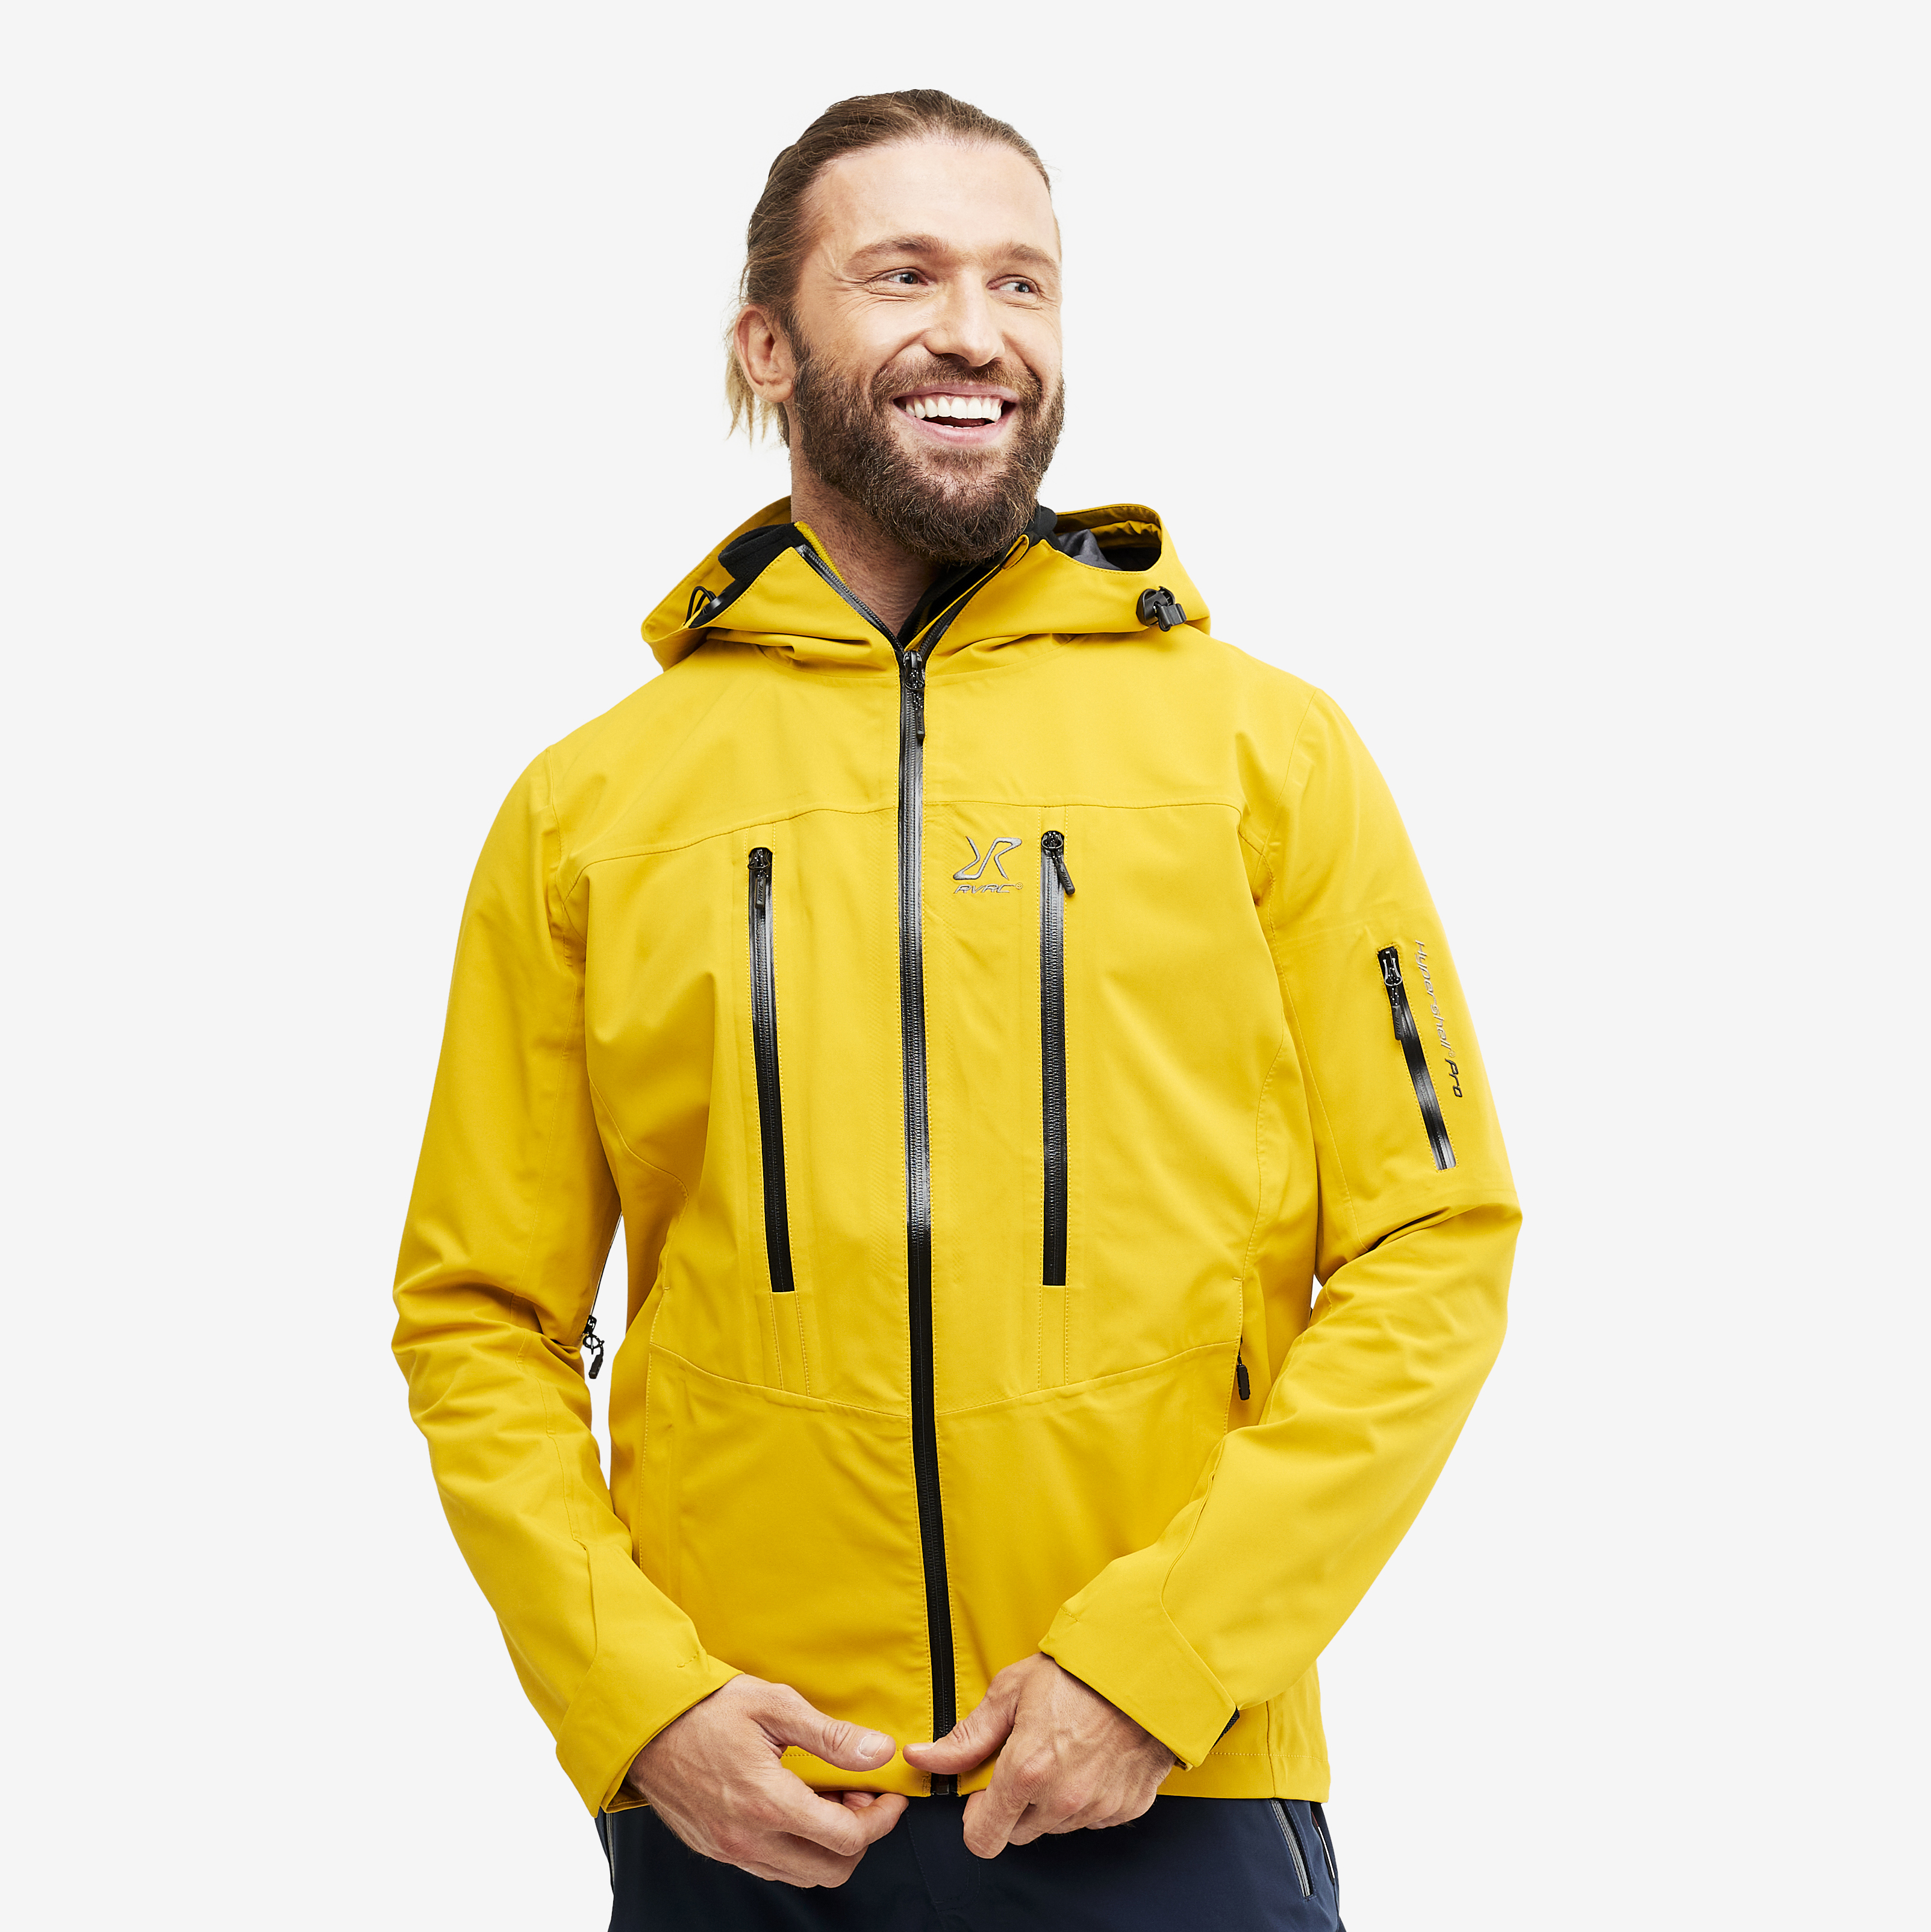 Whisper rain jacket for men in yellow